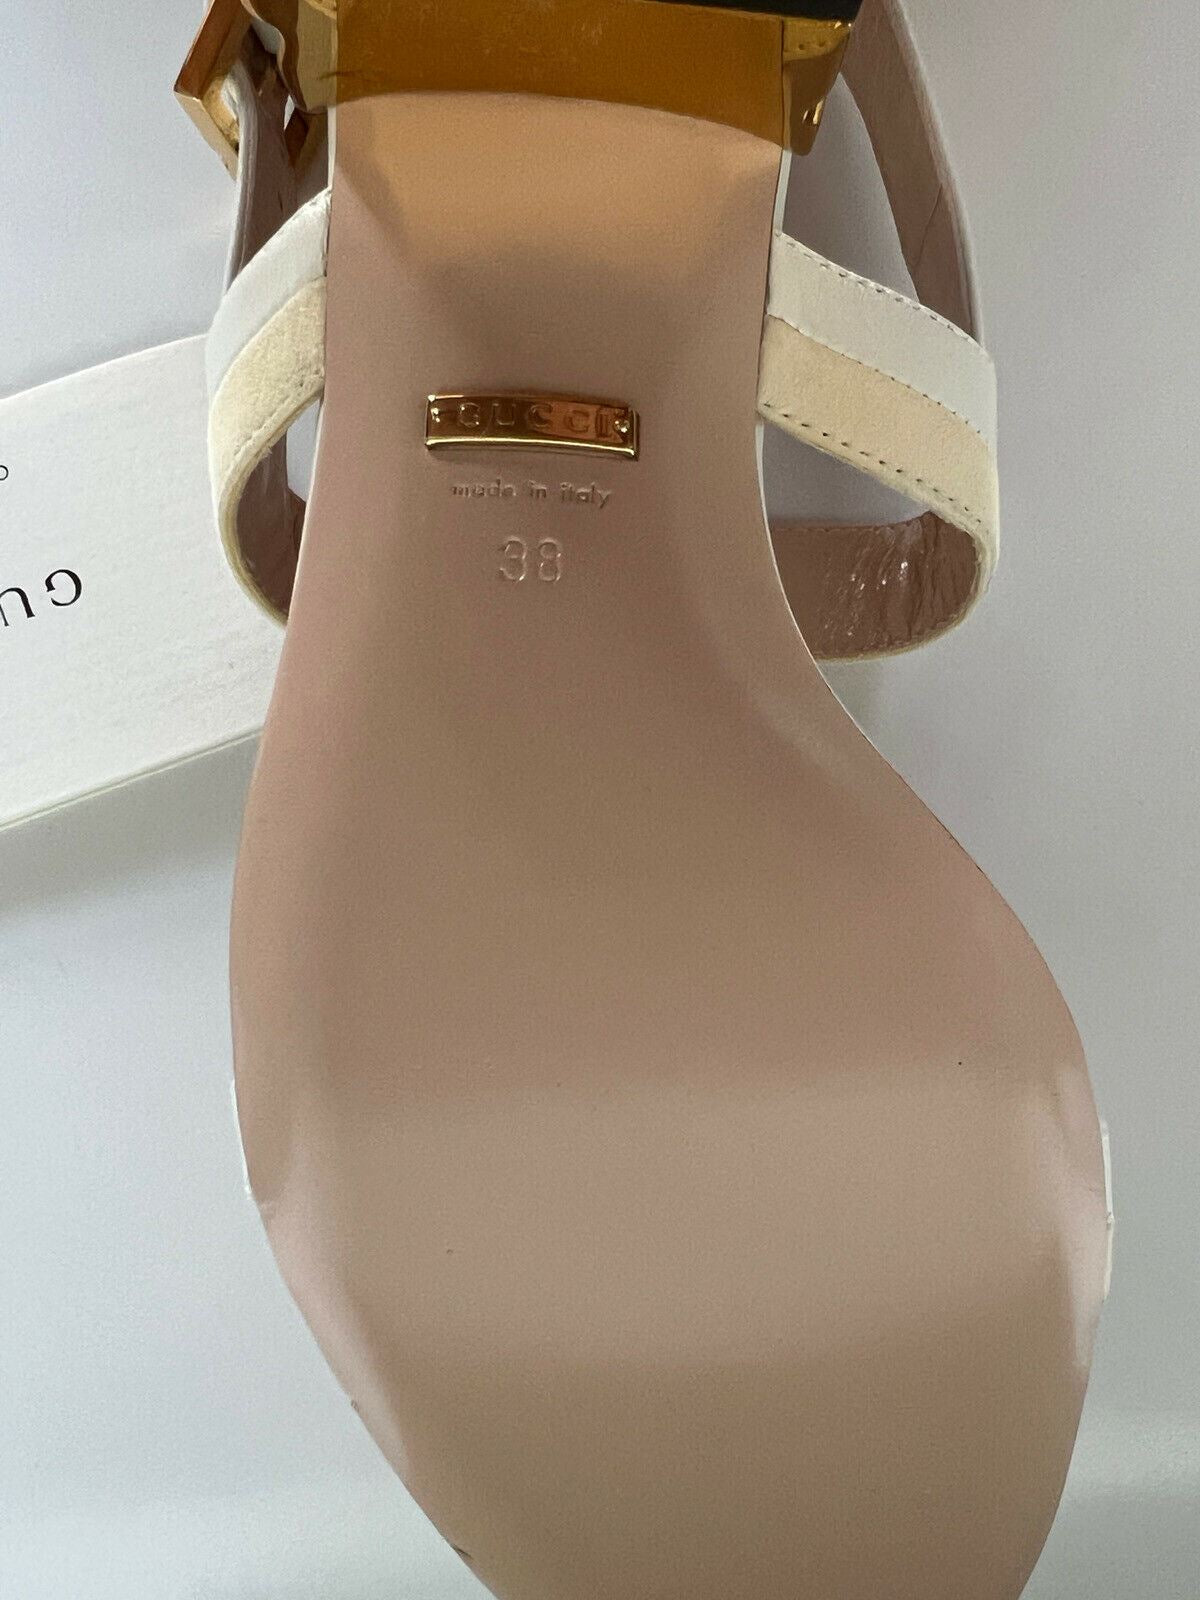 NIB Женские кожаные босоножки на каблуке в форме цепочки Gucci за 950 долларов США 8 США (38 ЕС) IT 655409 